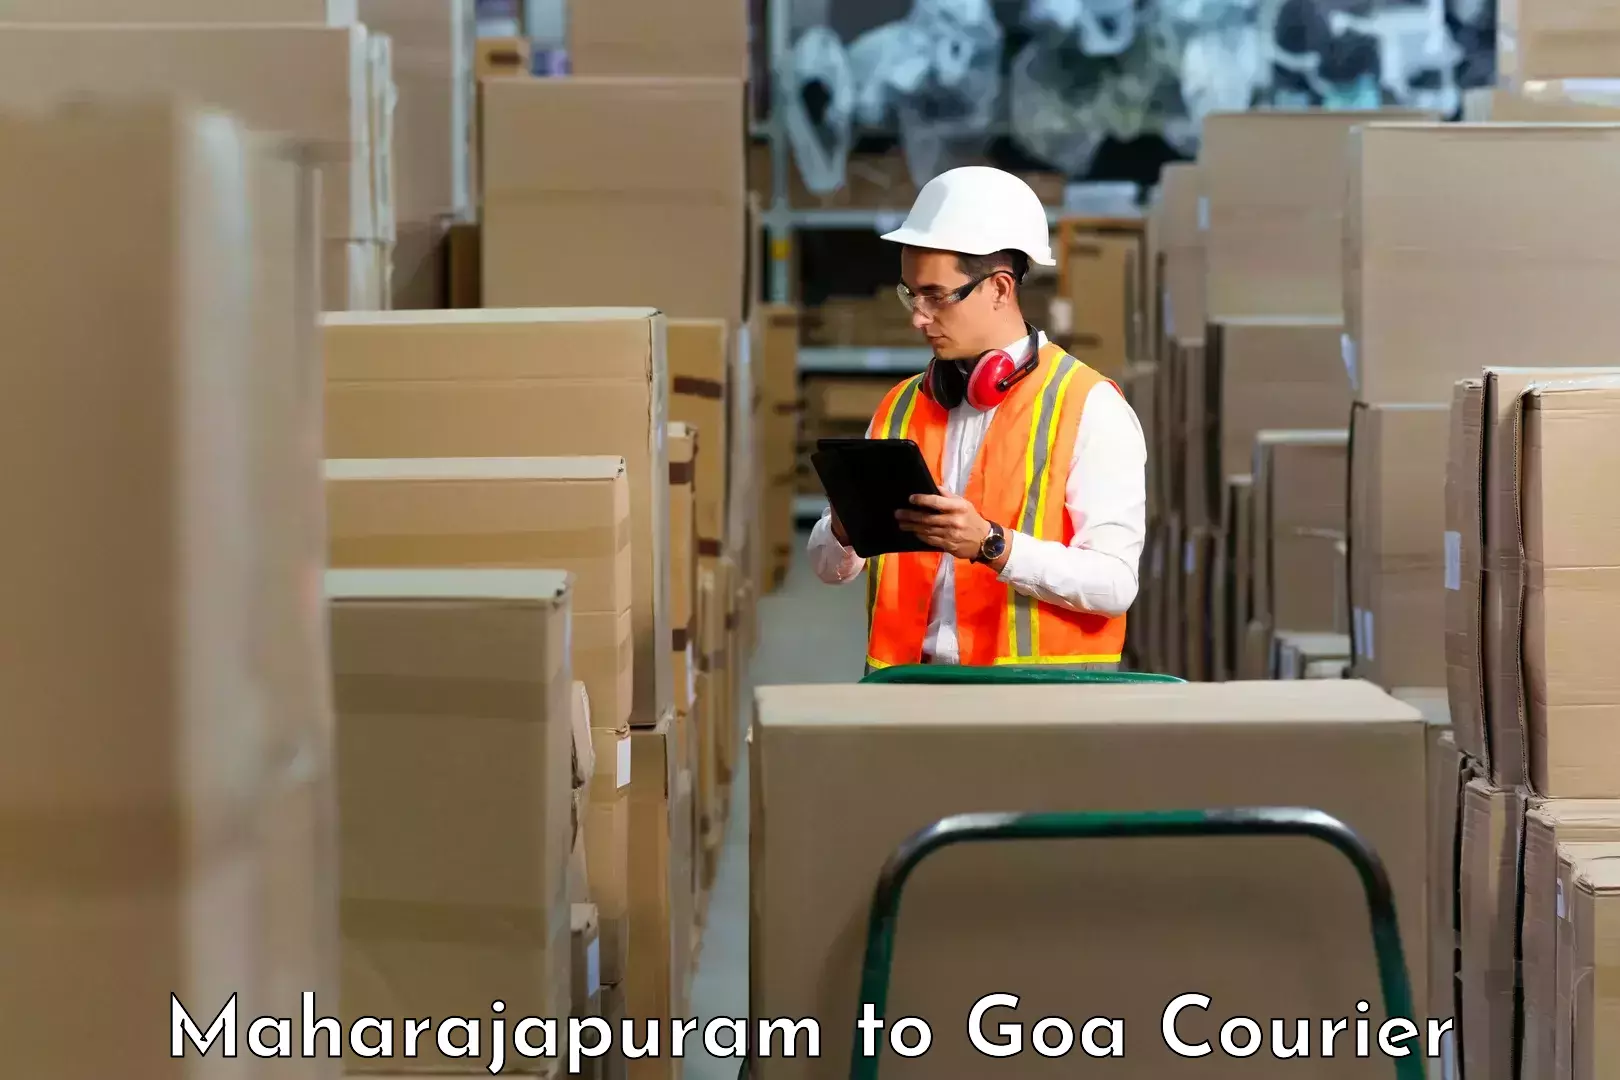 Courier service innovation in Maharajapuram to Canacona